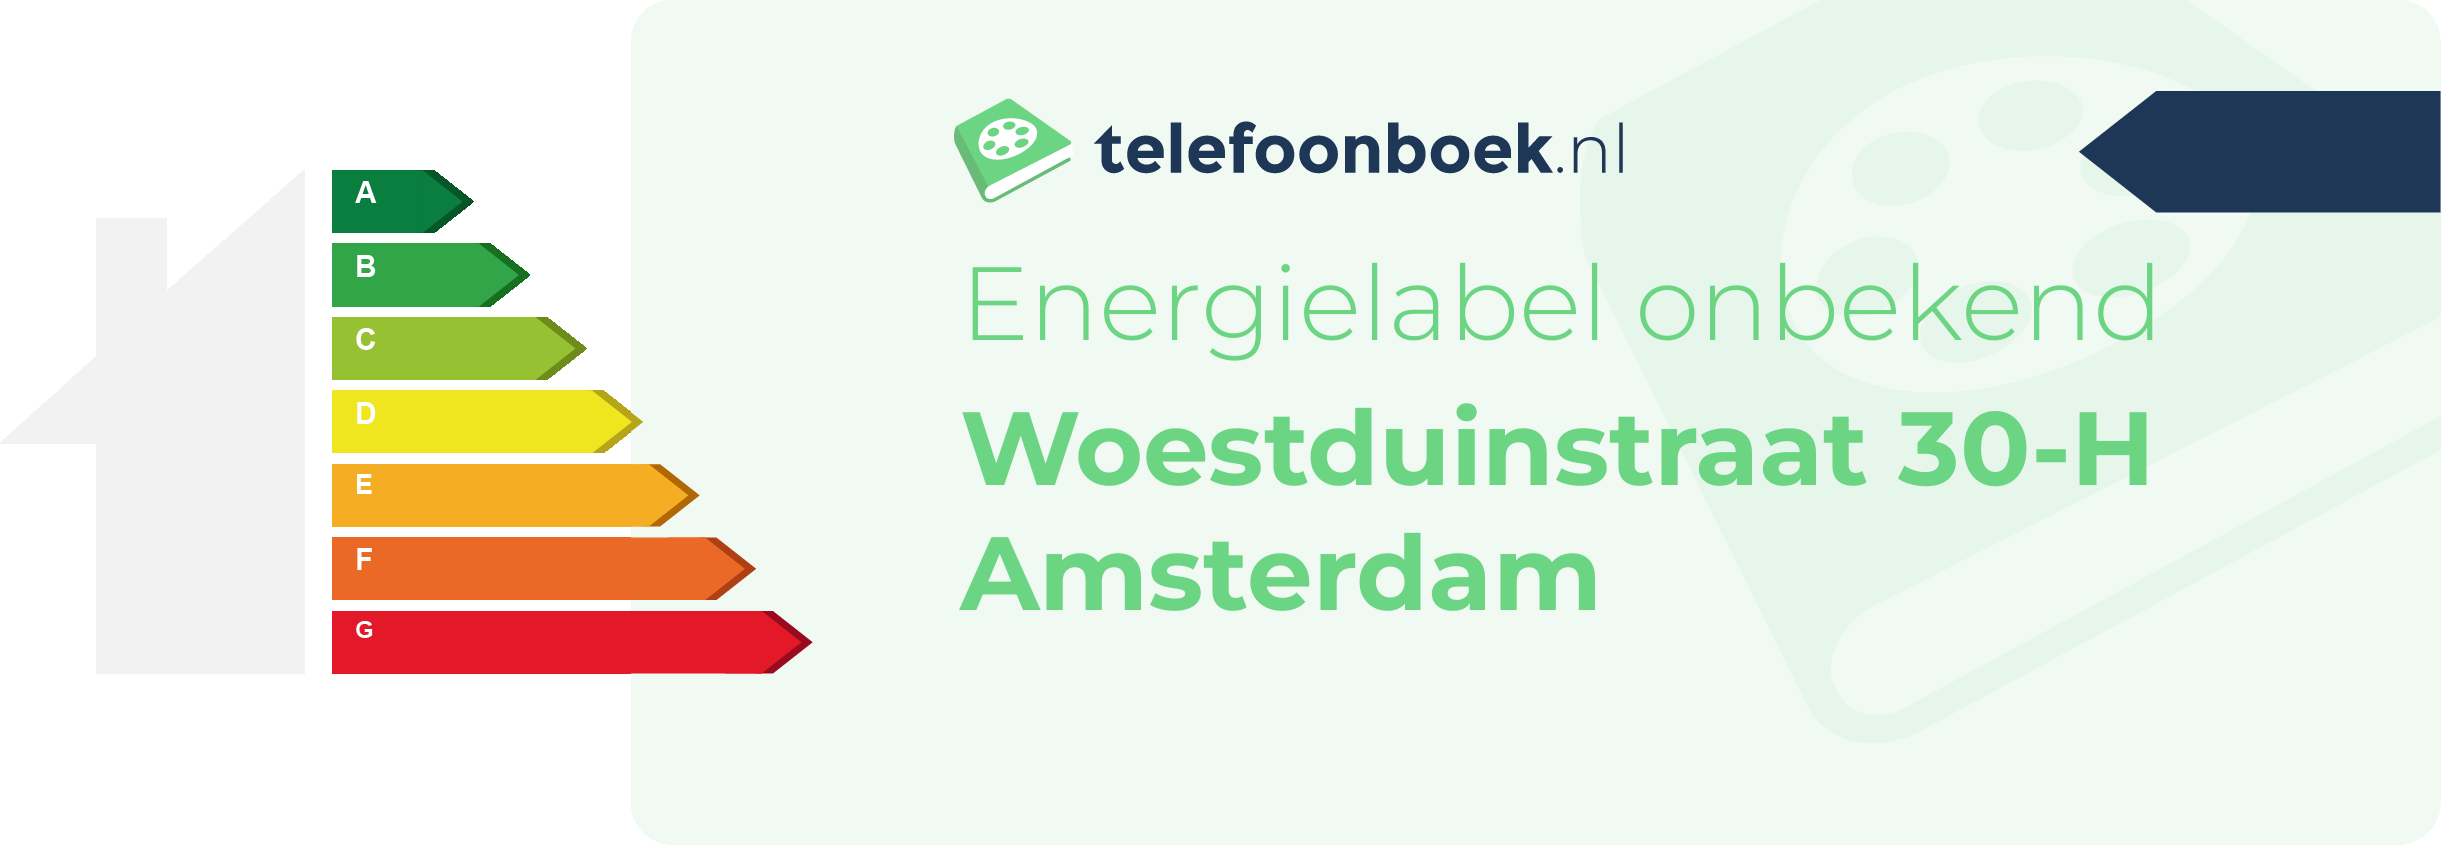 Energielabel Woestduinstraat 30-H Amsterdam